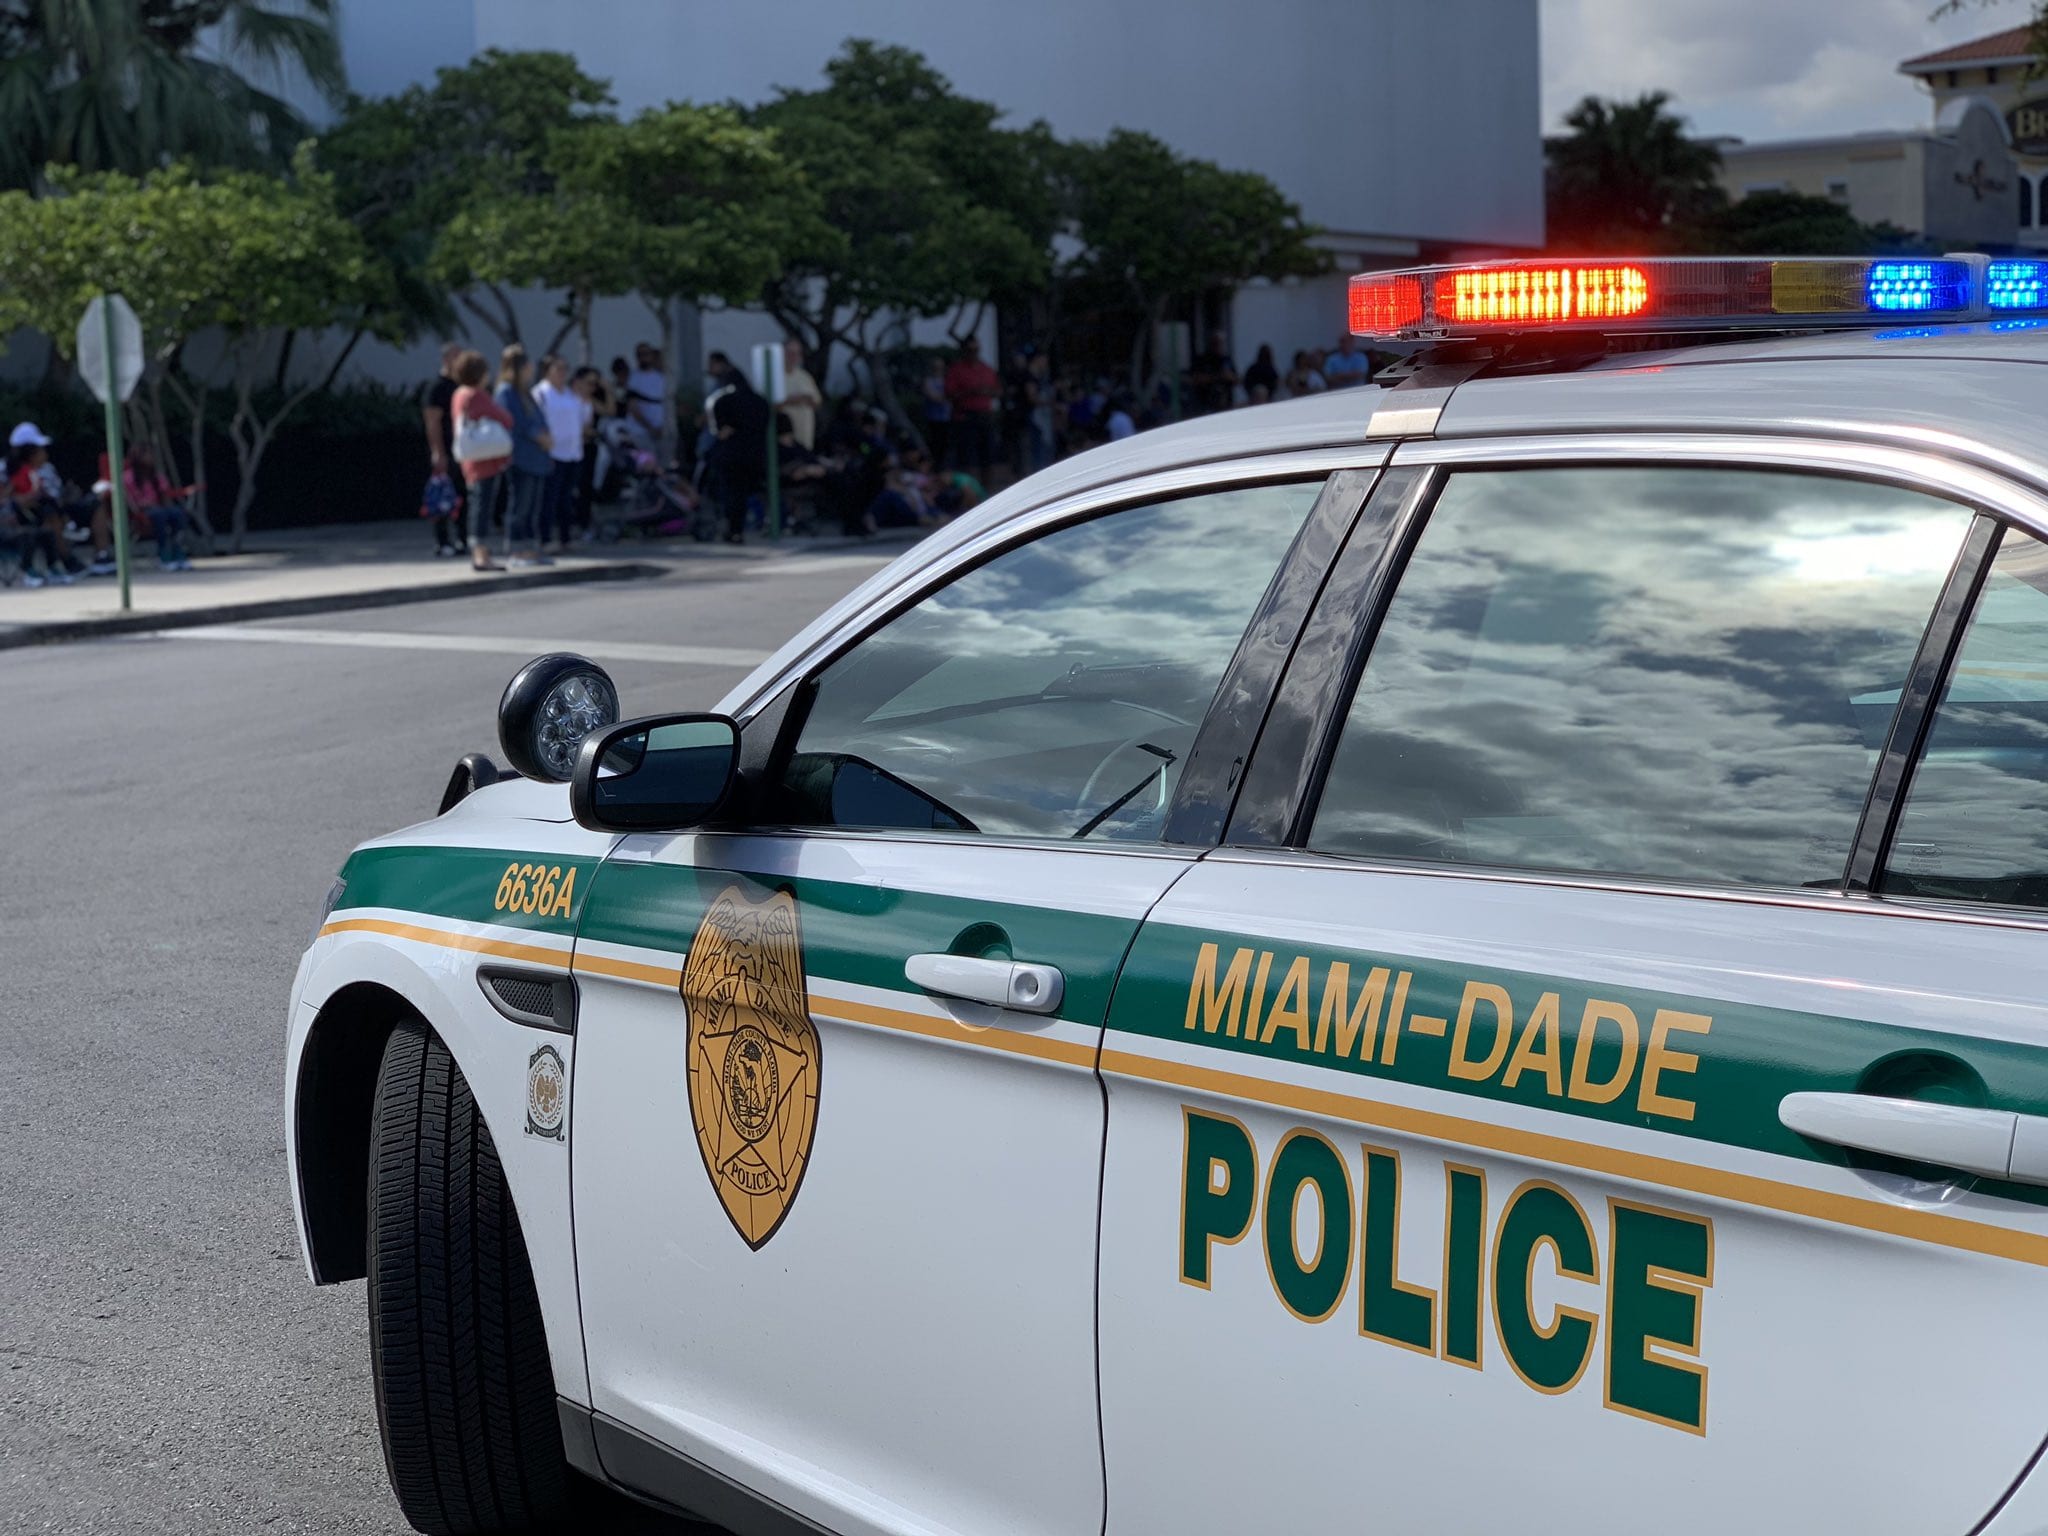 ¡Increíble! Esto fue lo que incautó la policía de Miami-Dade en plena detención de tráfico